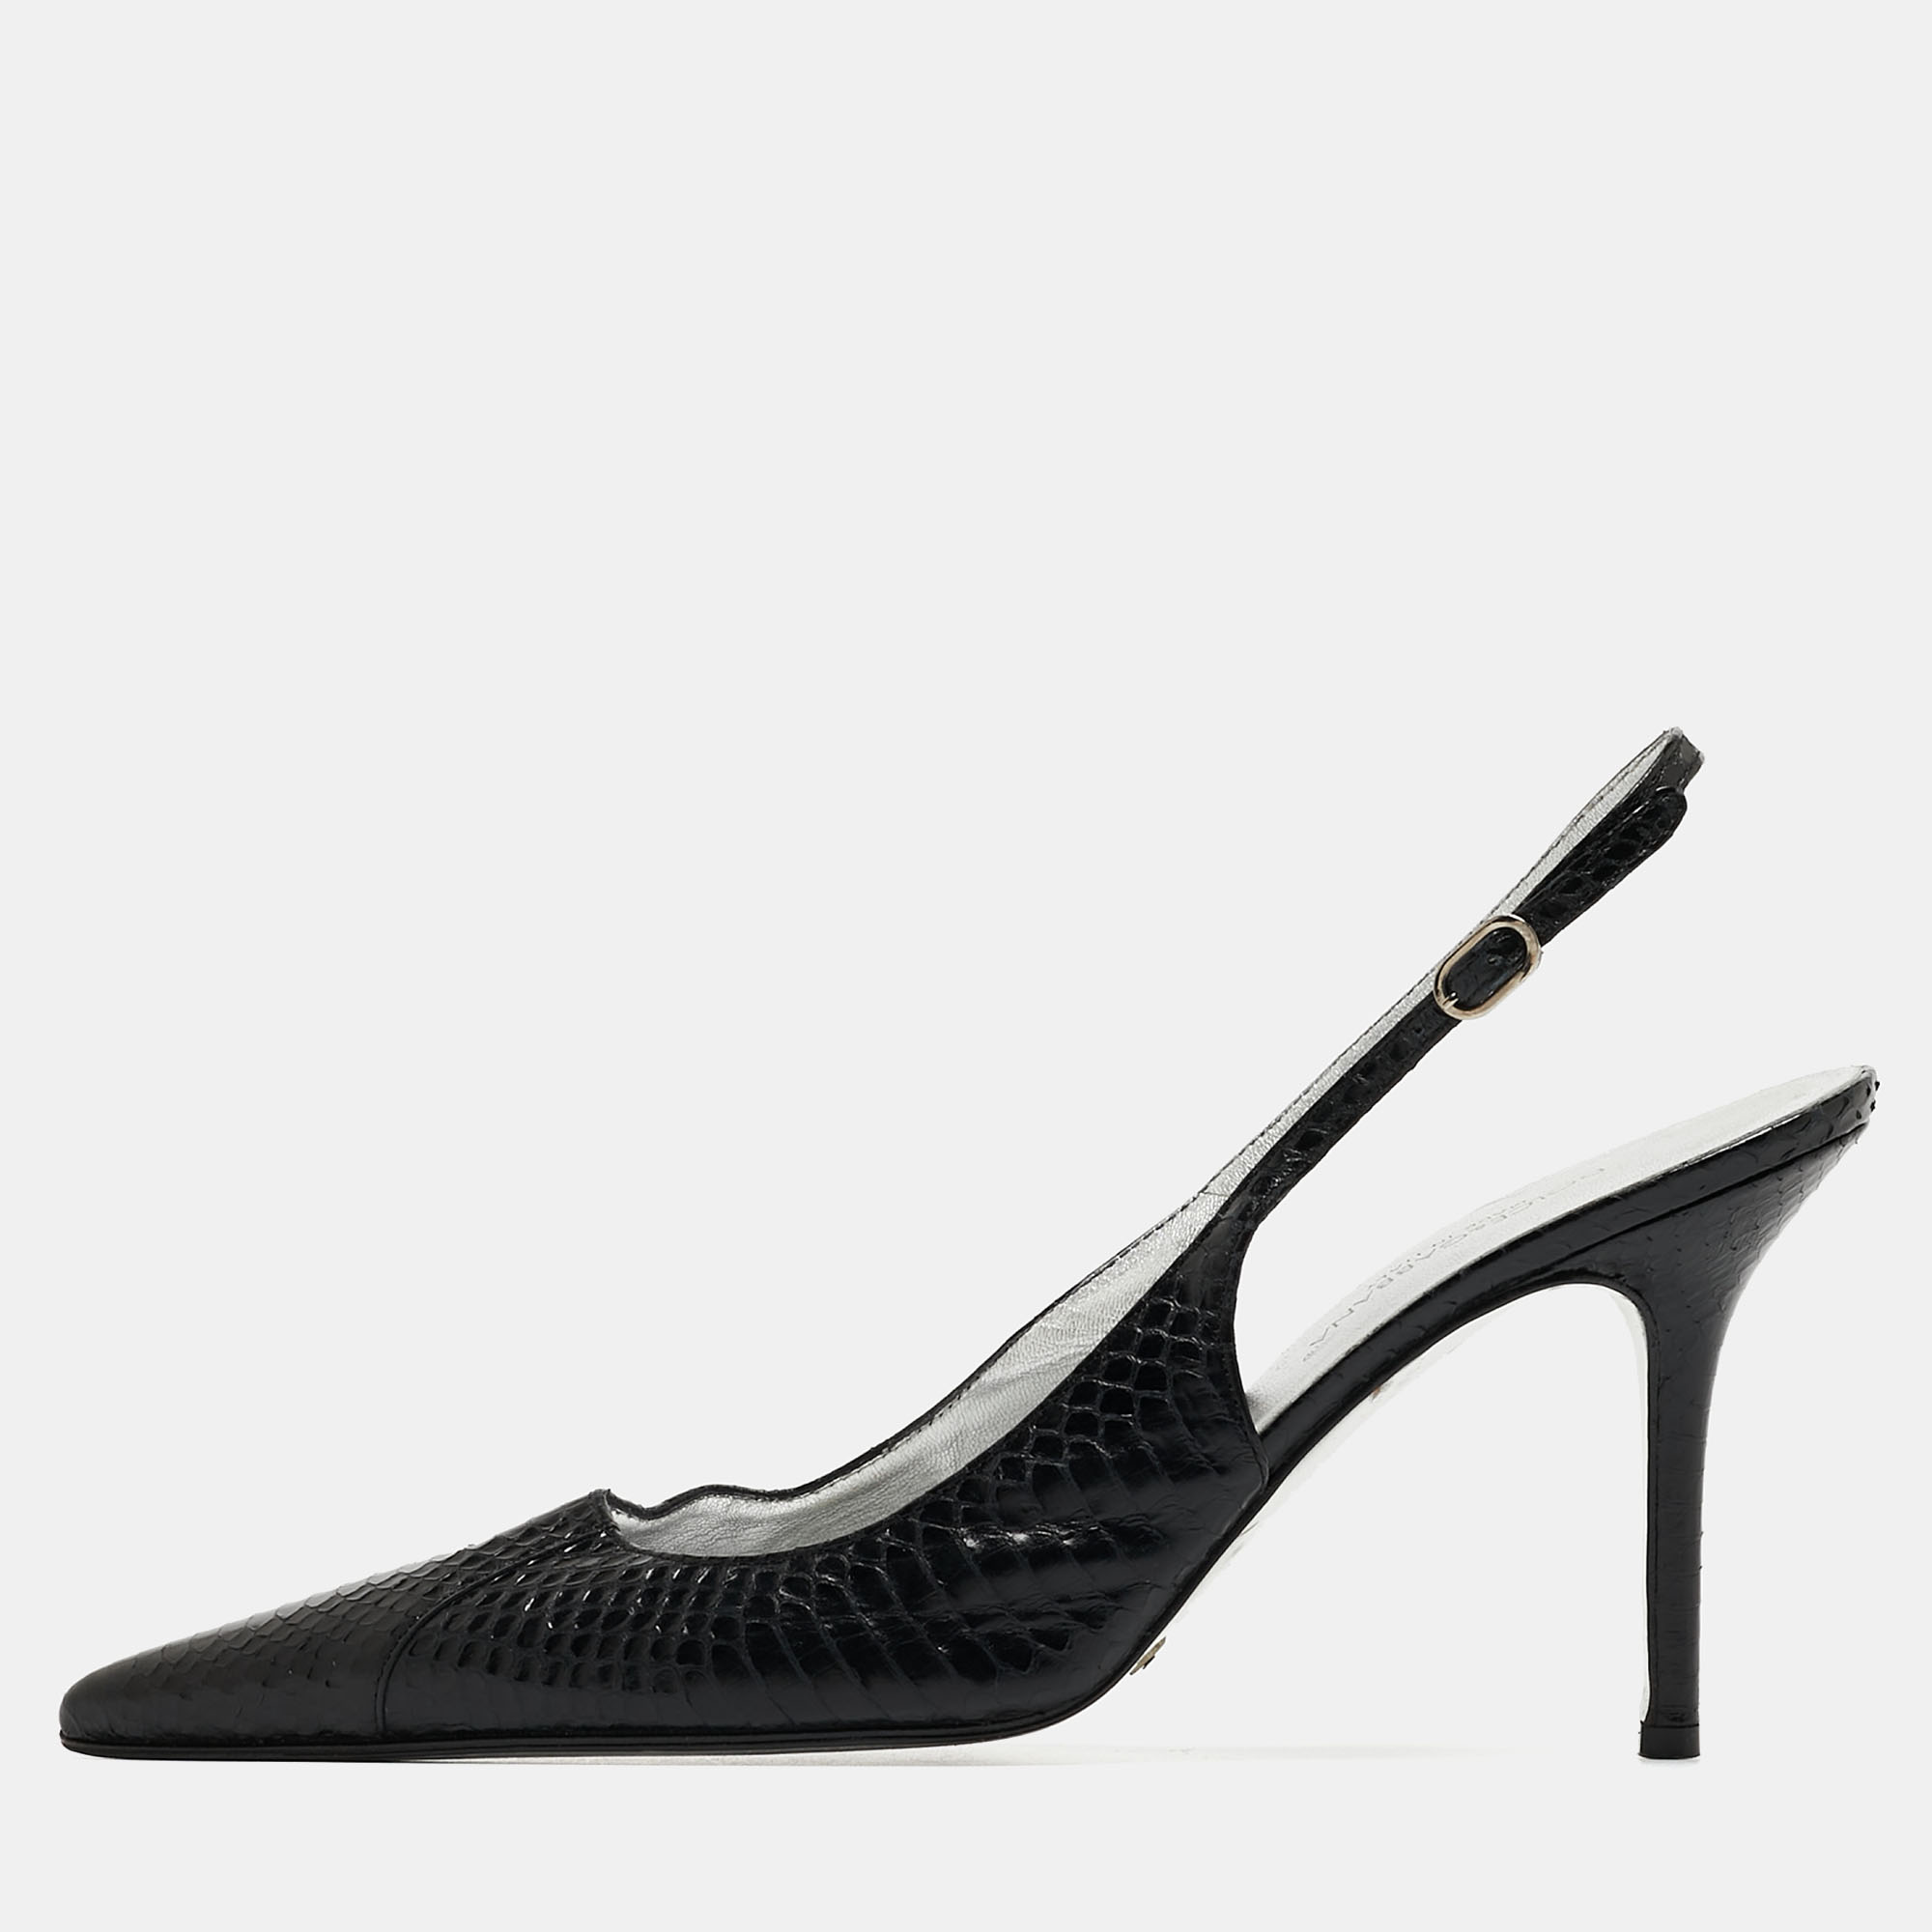 Dolce & Gabbana Black Python Slingback Pumps Size 39